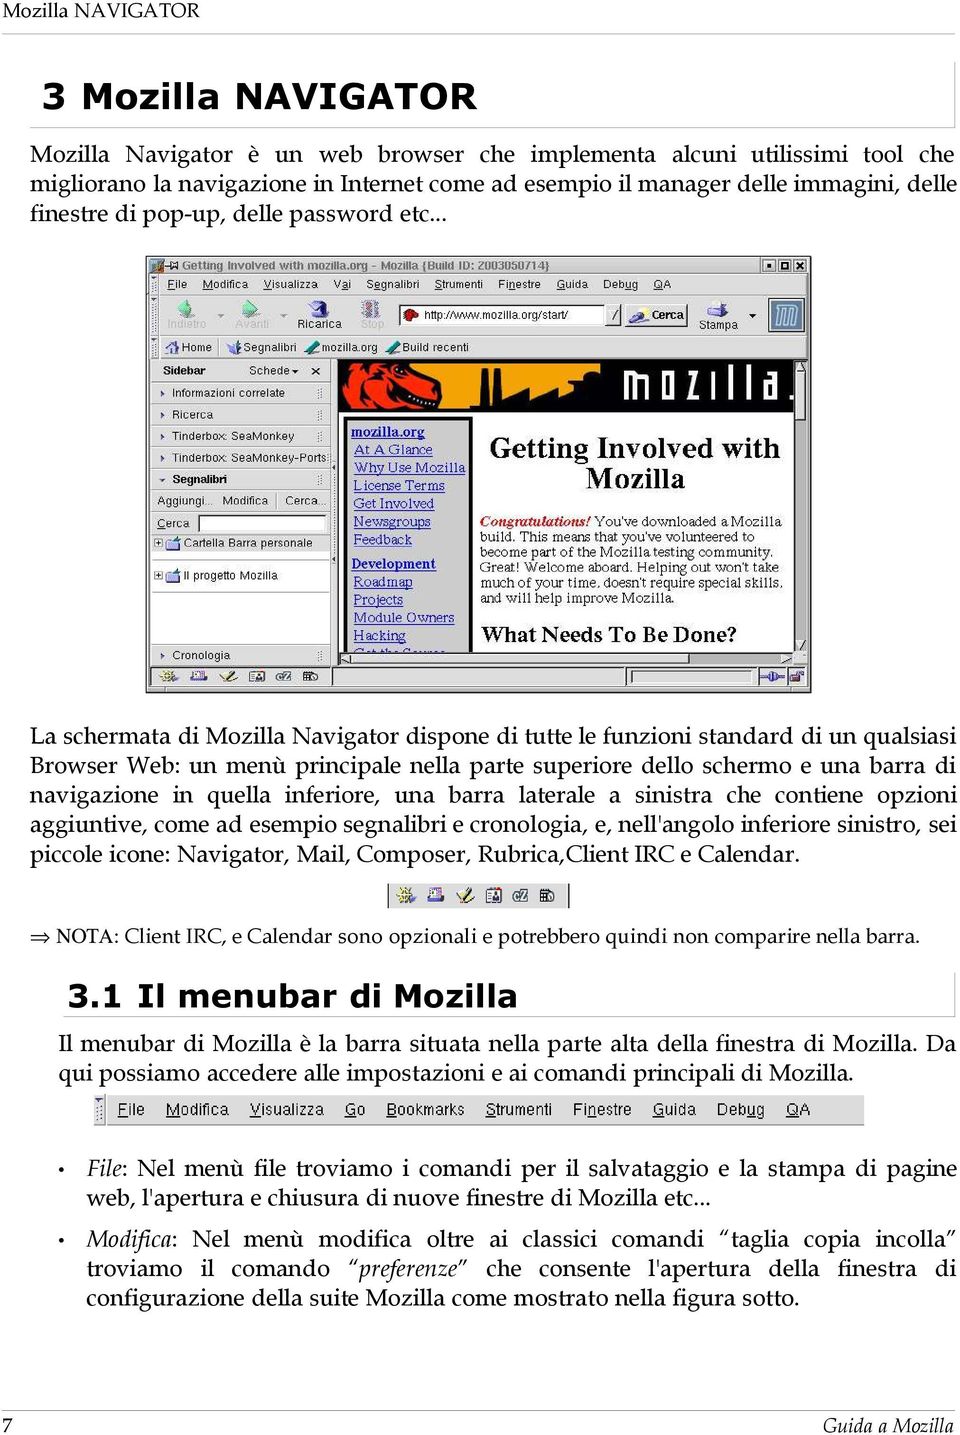 .. La schermata di Mozilla Navigator dispone di tutte le funzioni standard di un qualsiasi Browser Web: un menù principale nella parte superiore dello schermo e una barra di navigazione in quella